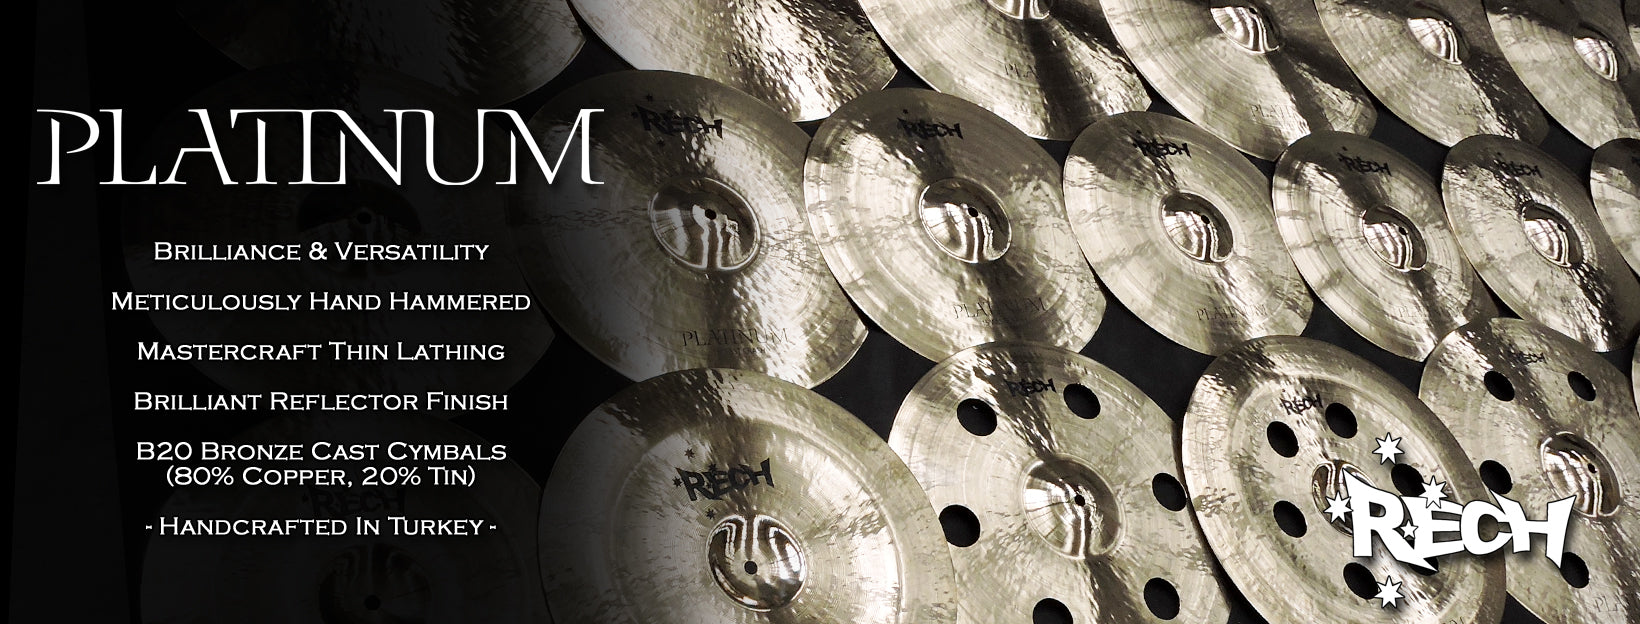 Rech Platinum Cymbals